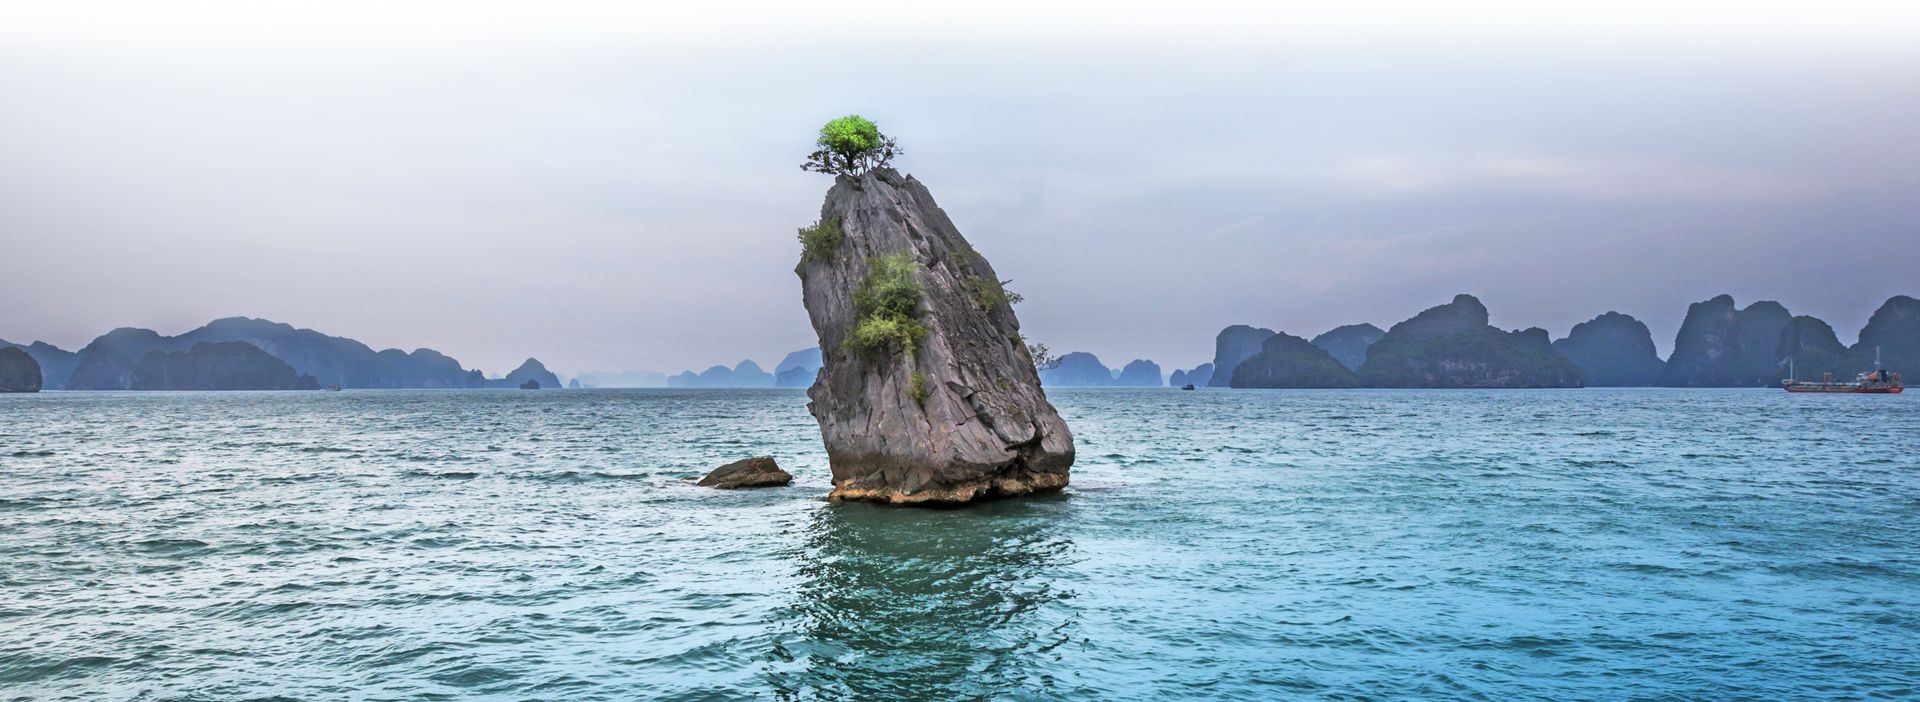 Ein Felsen steht mittig ein einem großen See - drumherum sind kleiner Berge und ein Schiff